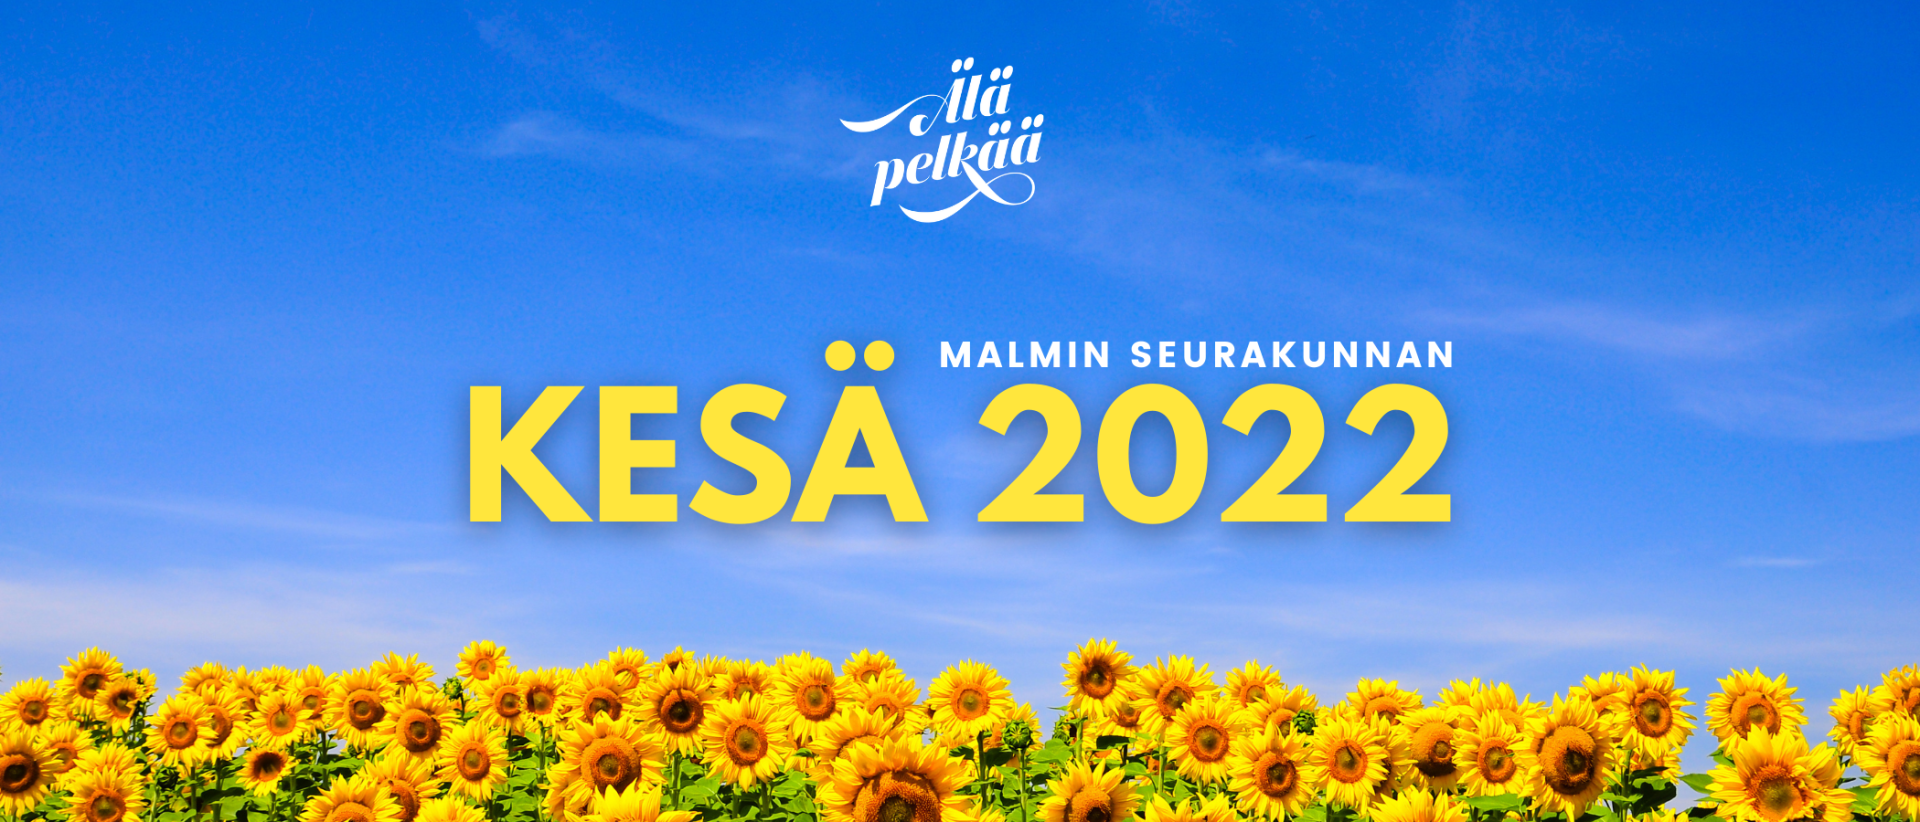 Auringonkukkapelto ja sininen taivas, teksti: Malmin seurakunta kesän toiminta 2022, älä pelkää.